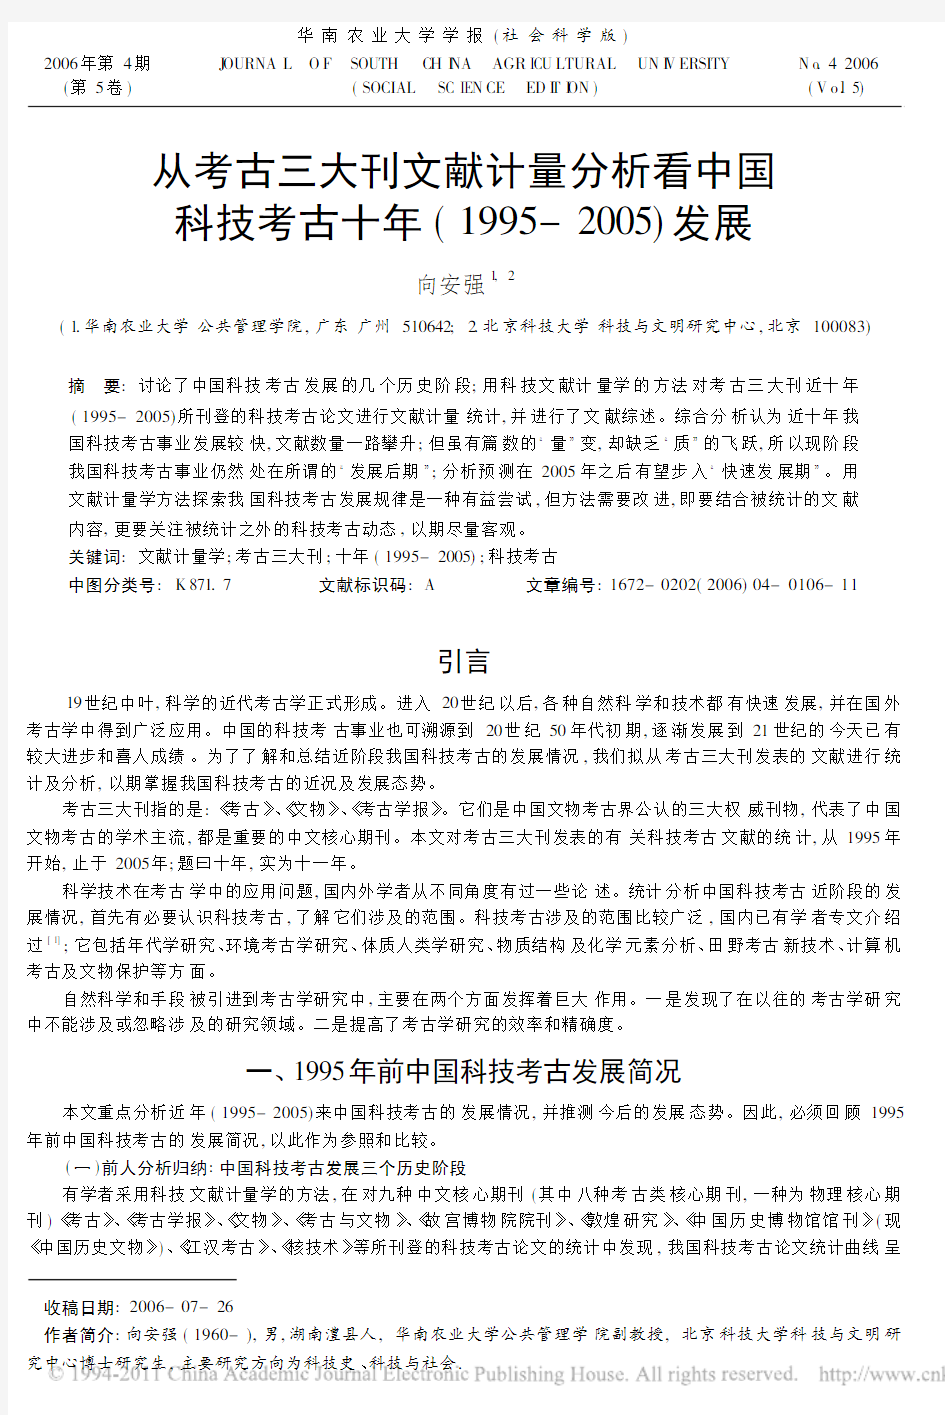 从考古三大刊文献计量分析看中国科技考古十年_1995_2005_发展(1)